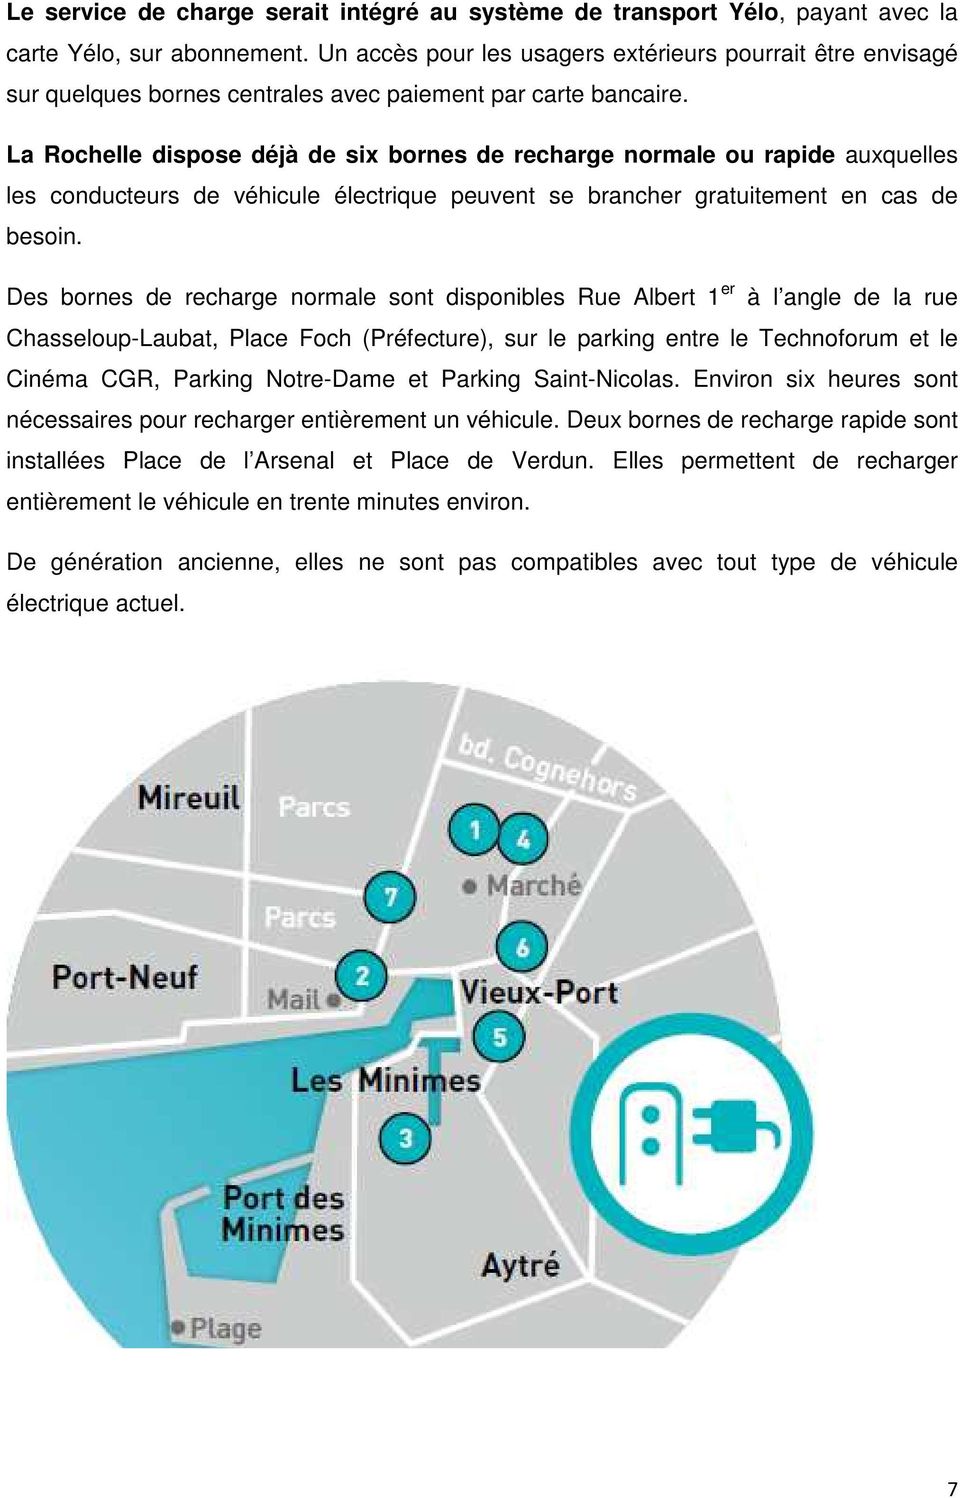 La Rochelle dispose déjà de six bornes de recharge normale ou rapide auxquelles les conducteurs de véhicule électrique peuvent se brancher gratuitement en cas de besoin.